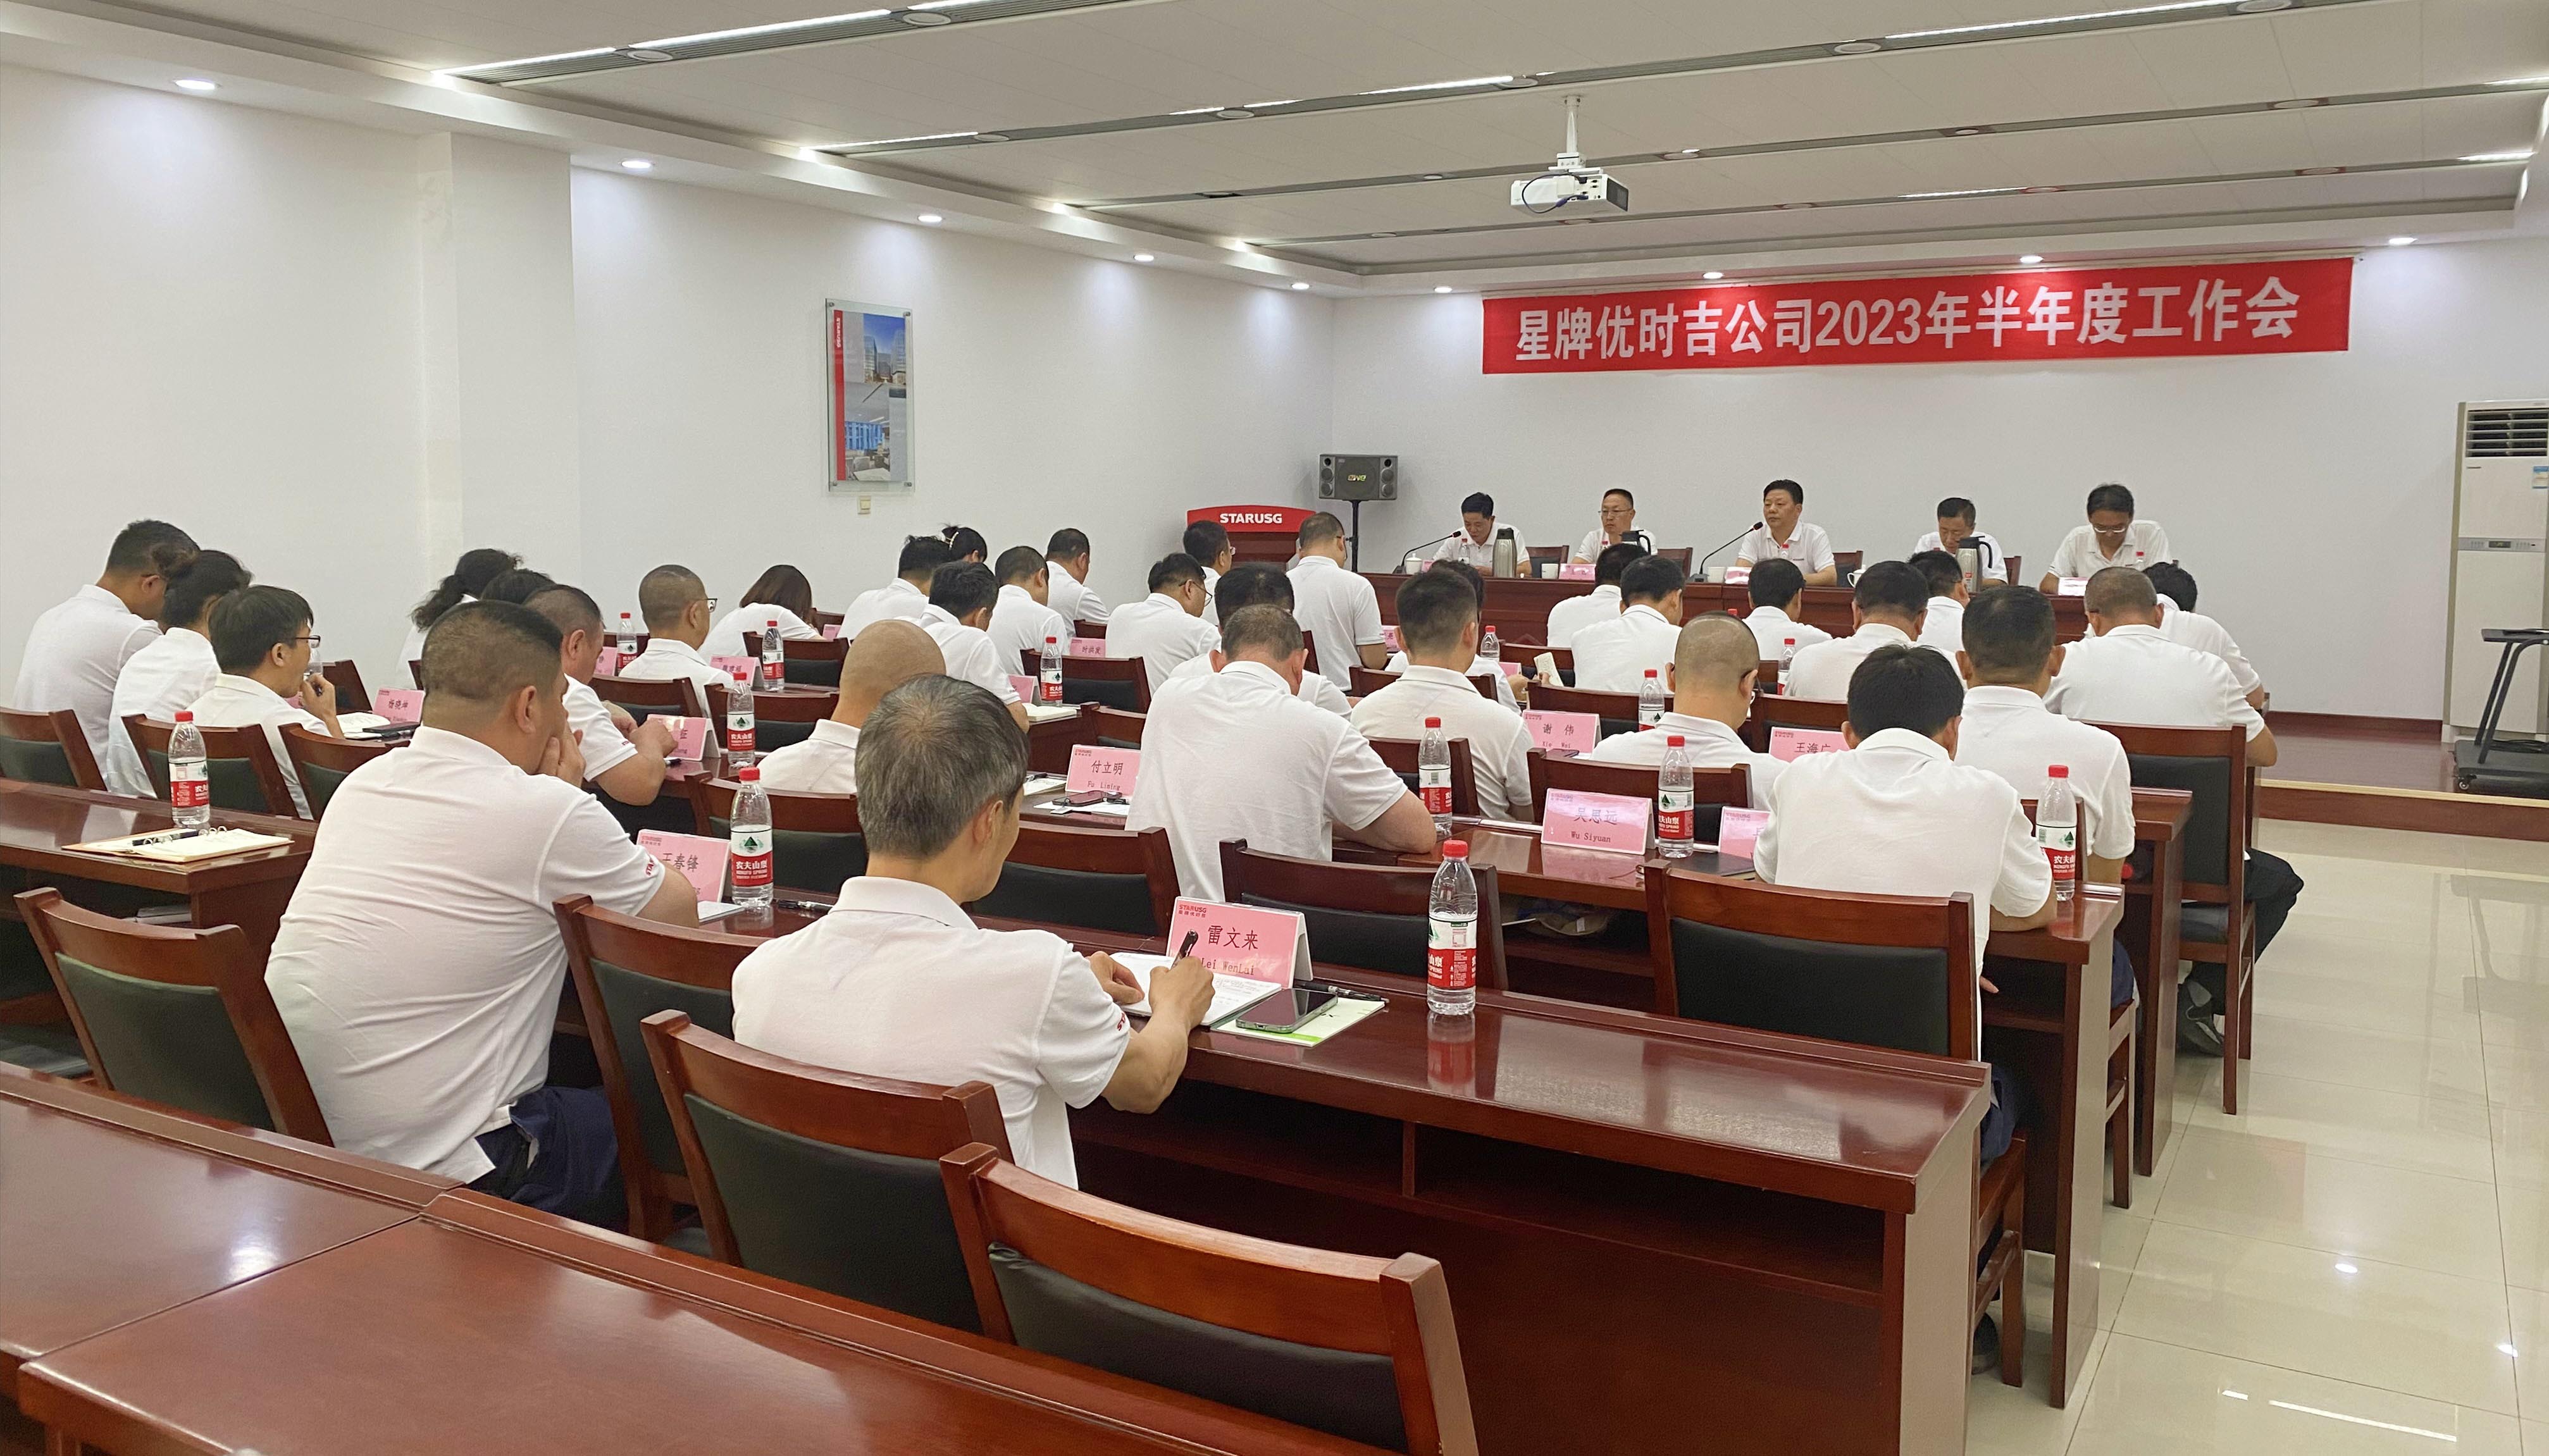 申博sunbet公司召开2023年半年度工作会